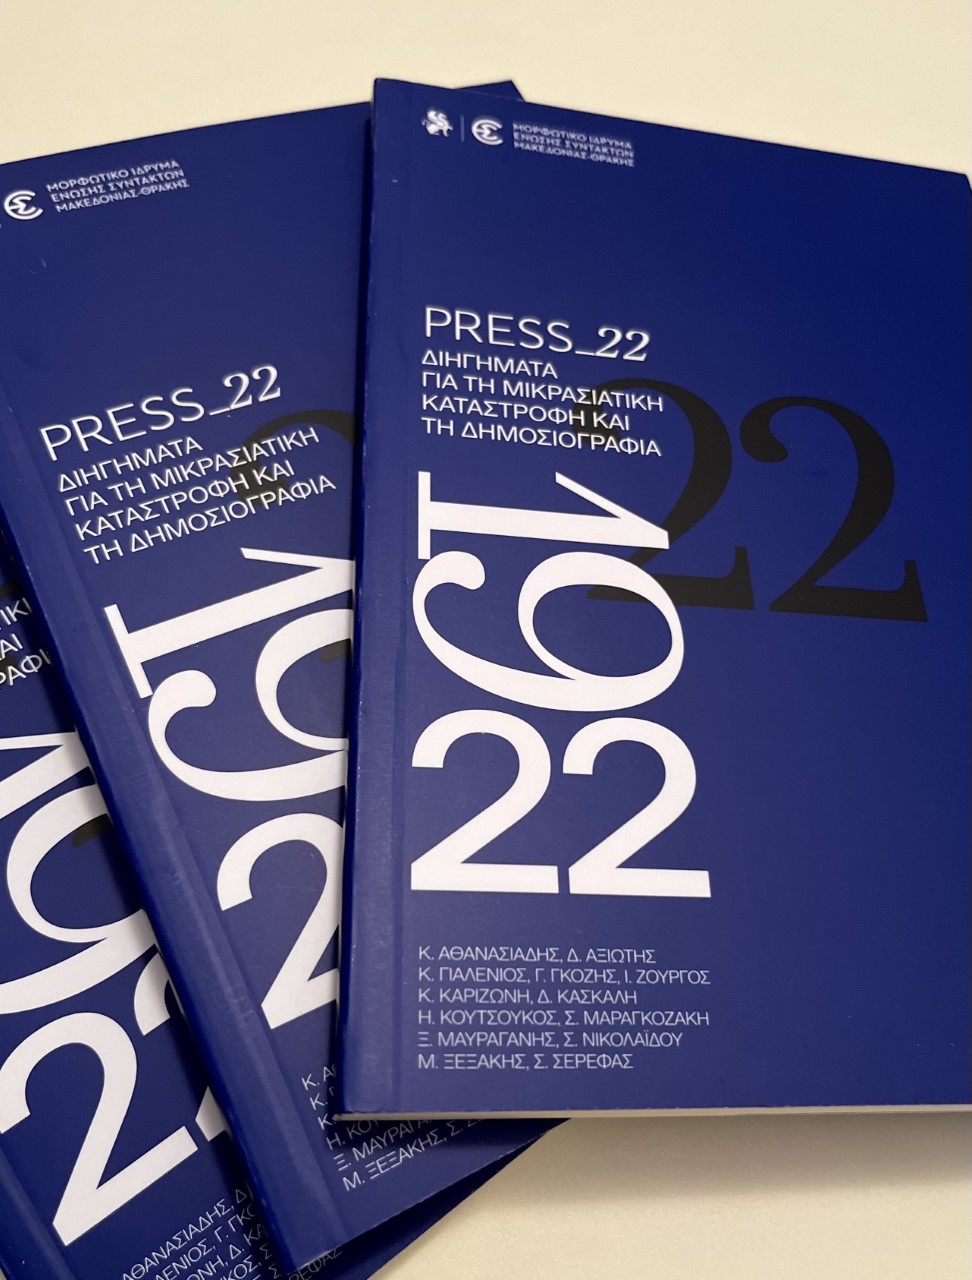 PRESS_22 Διηγήματα για τη Μικρασιατική Καταστροφή και τη Δημοσιογραφία